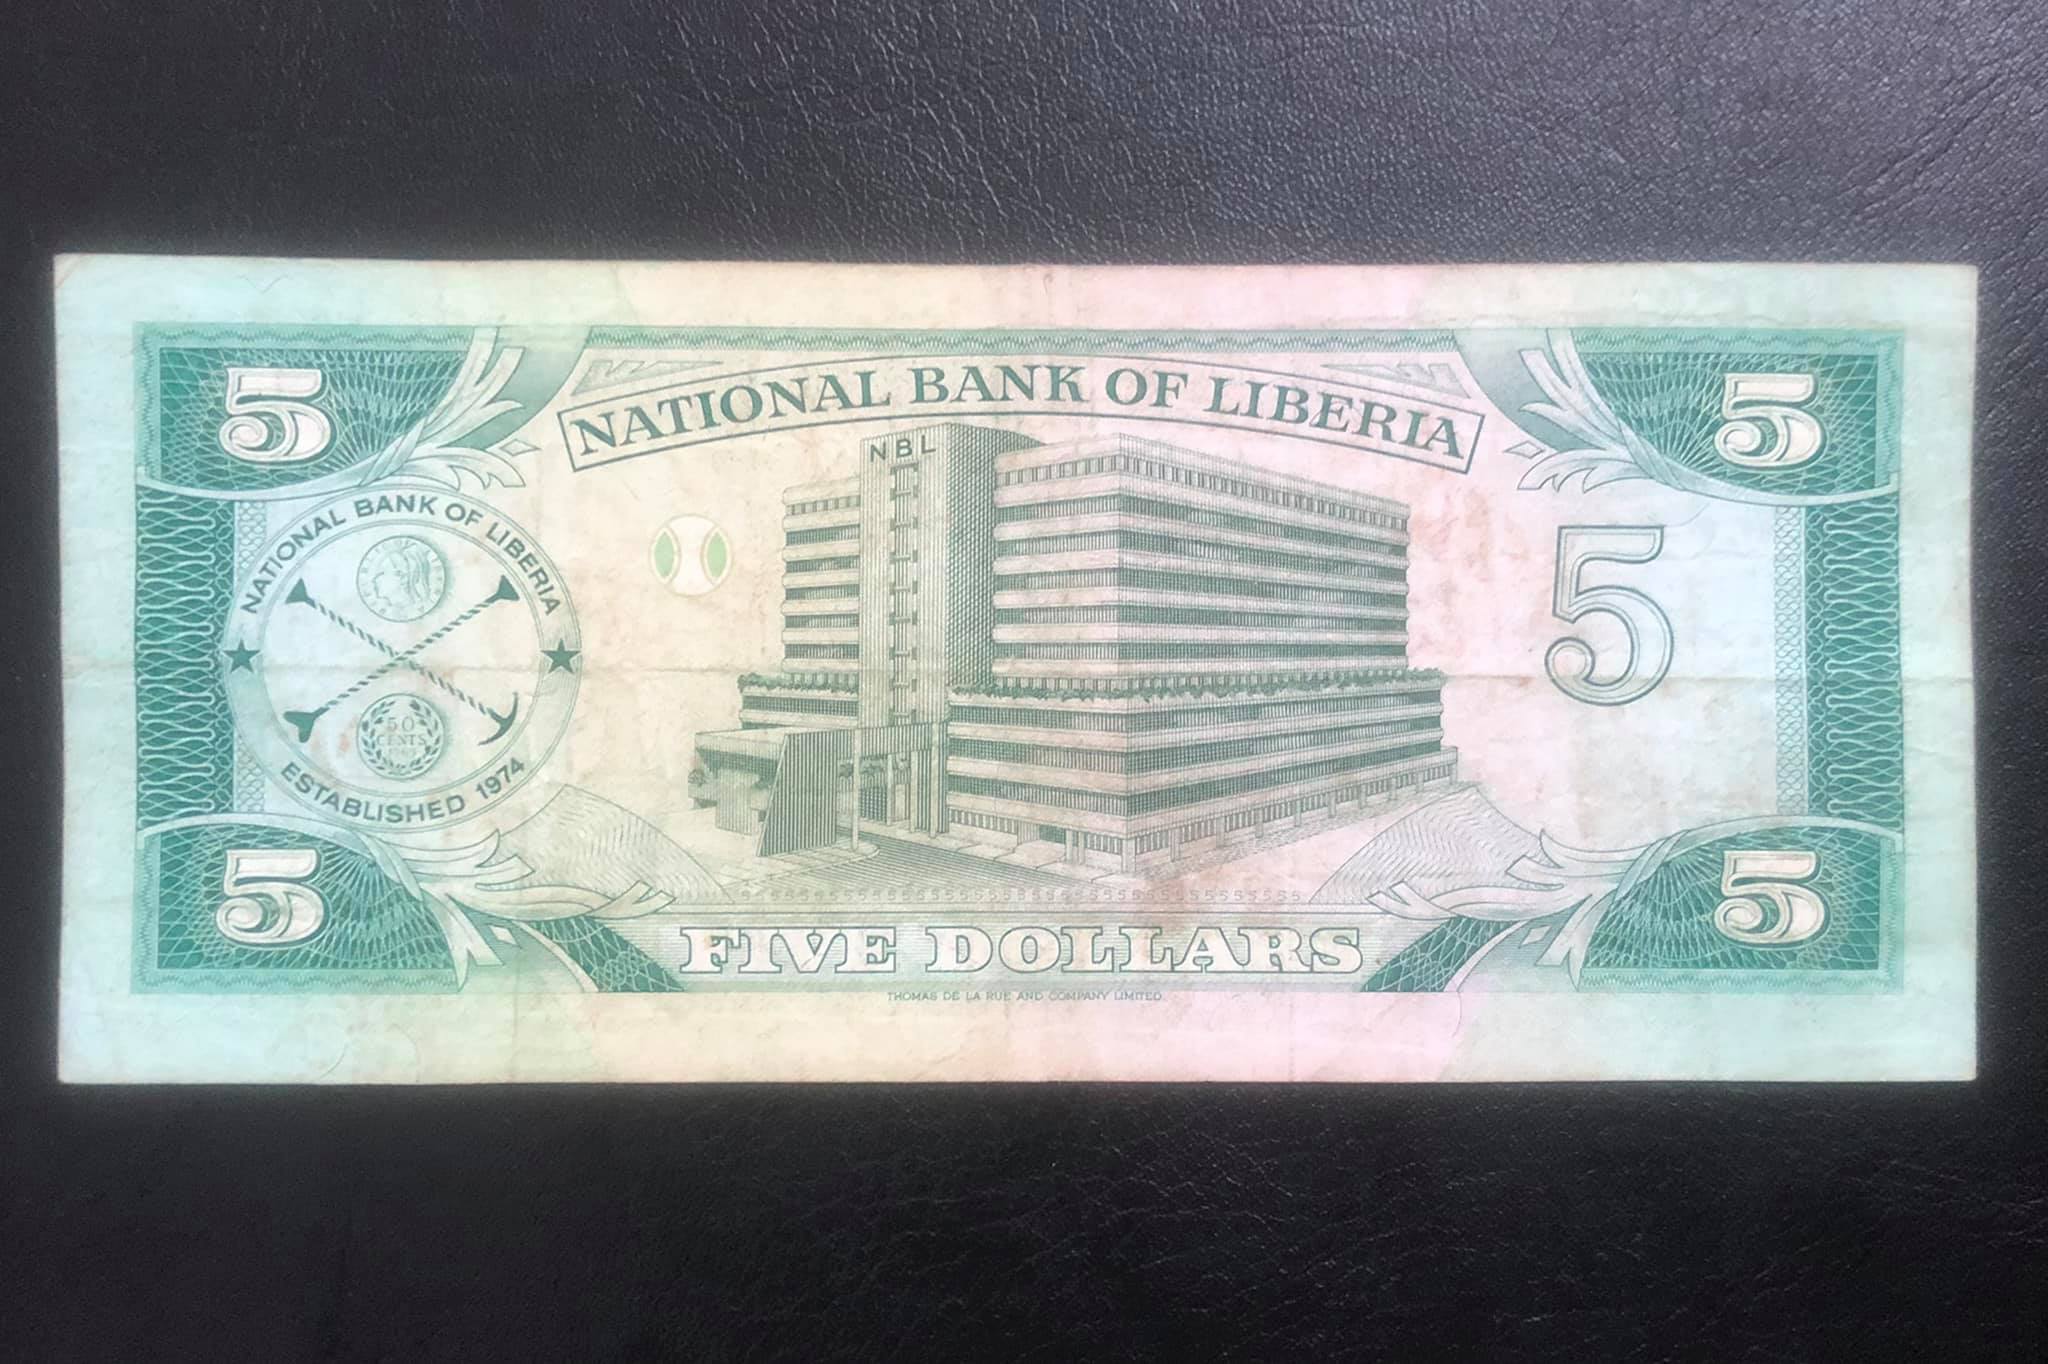 Tờ 5 dollars của Cộng hòa Liberia, tiền xưa thế giới sưu tầm